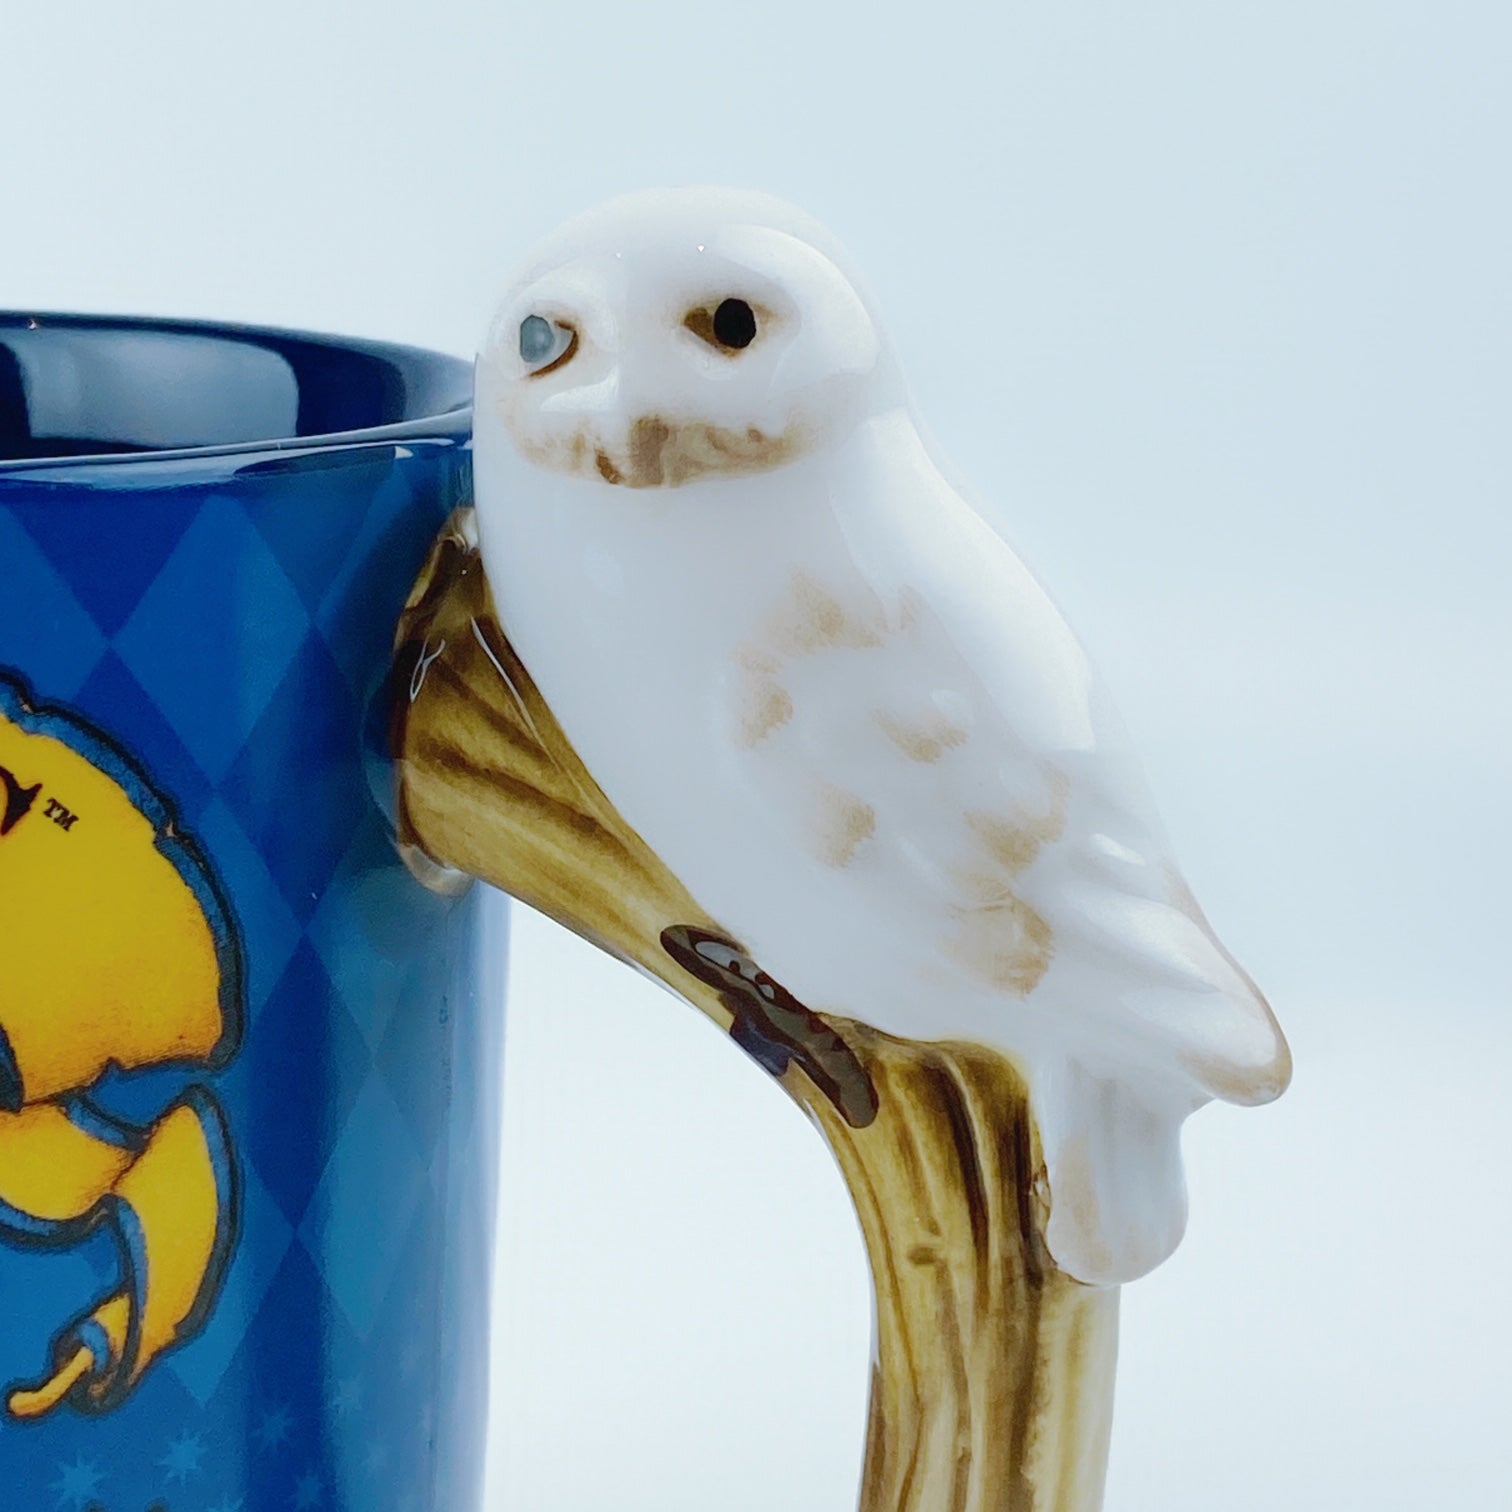 Harry Potter Hogwarts Crest 20Oz Ceramic Mug With Sculpted Handle